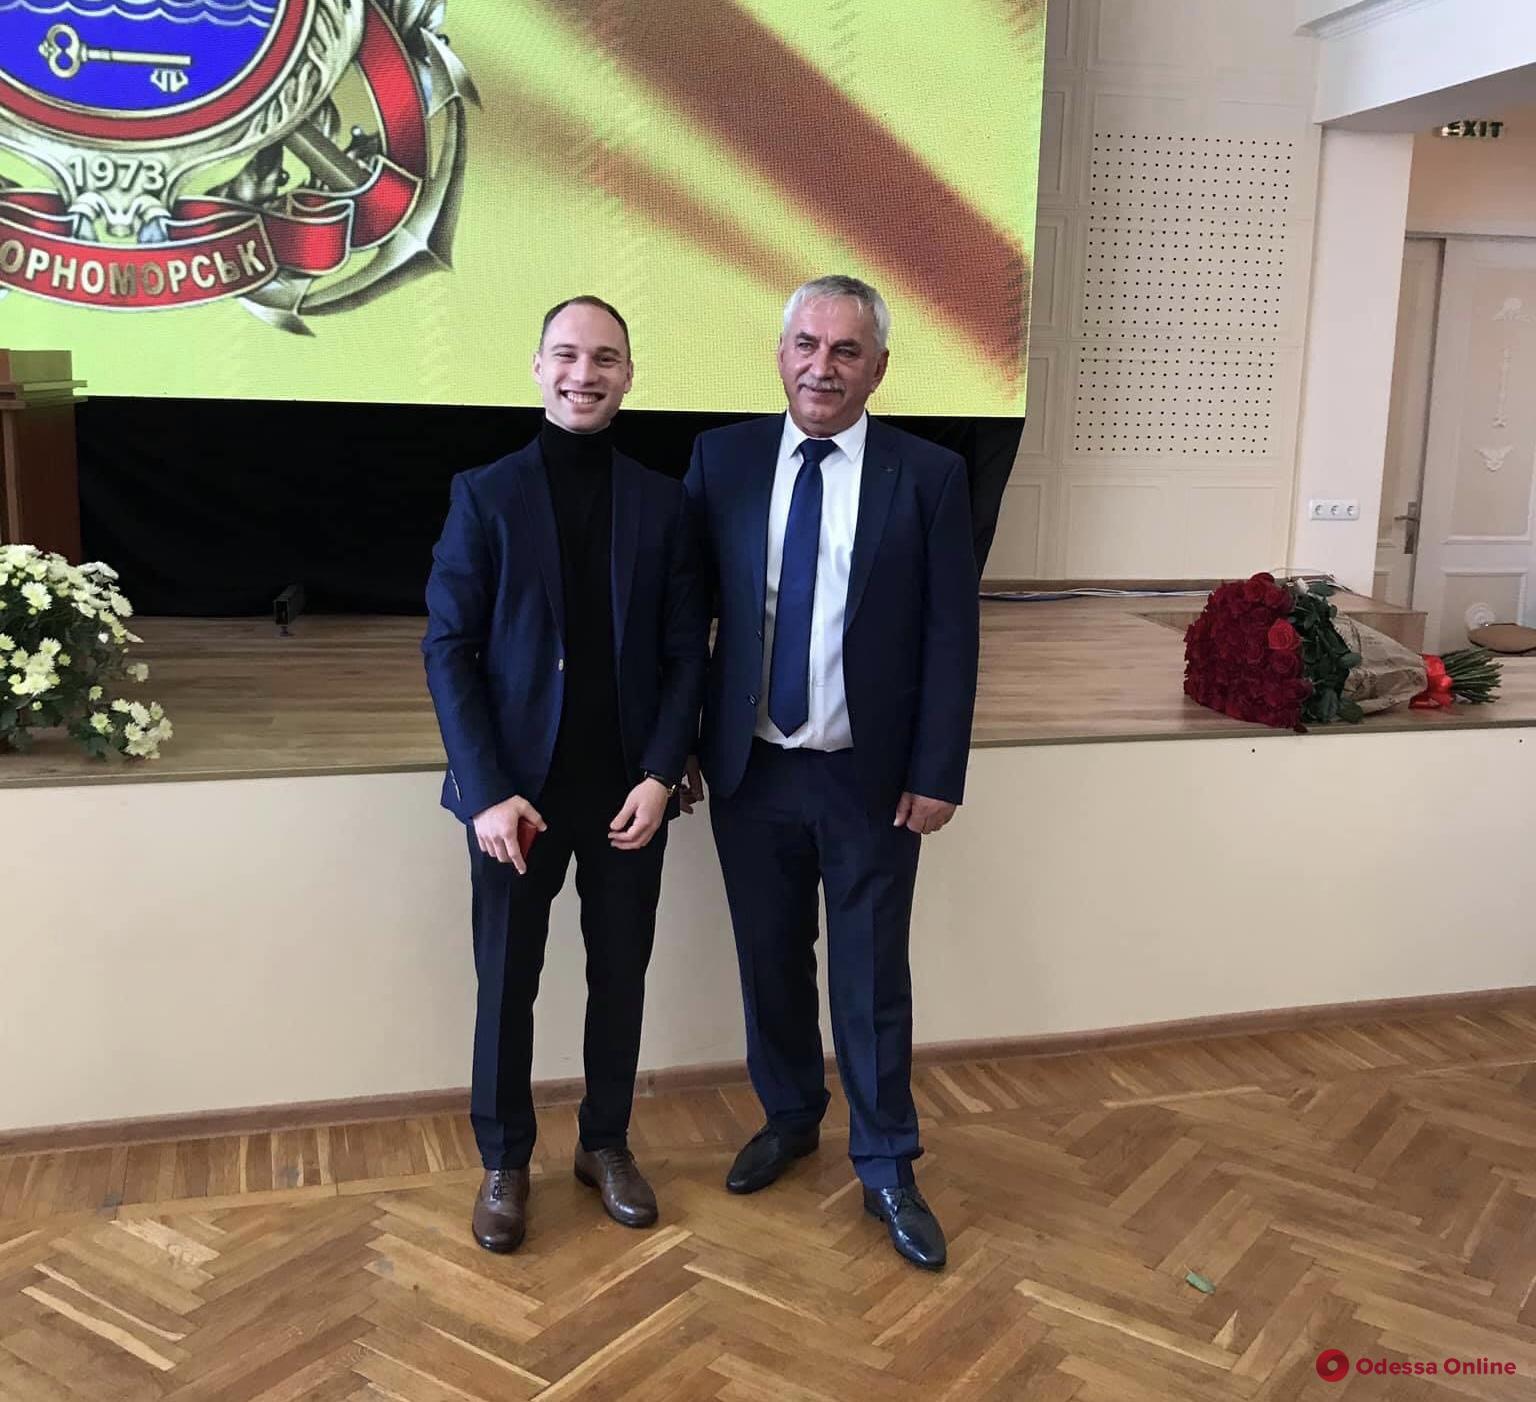 Хмельнюк сдал пост: Черноморск получил нового мэра